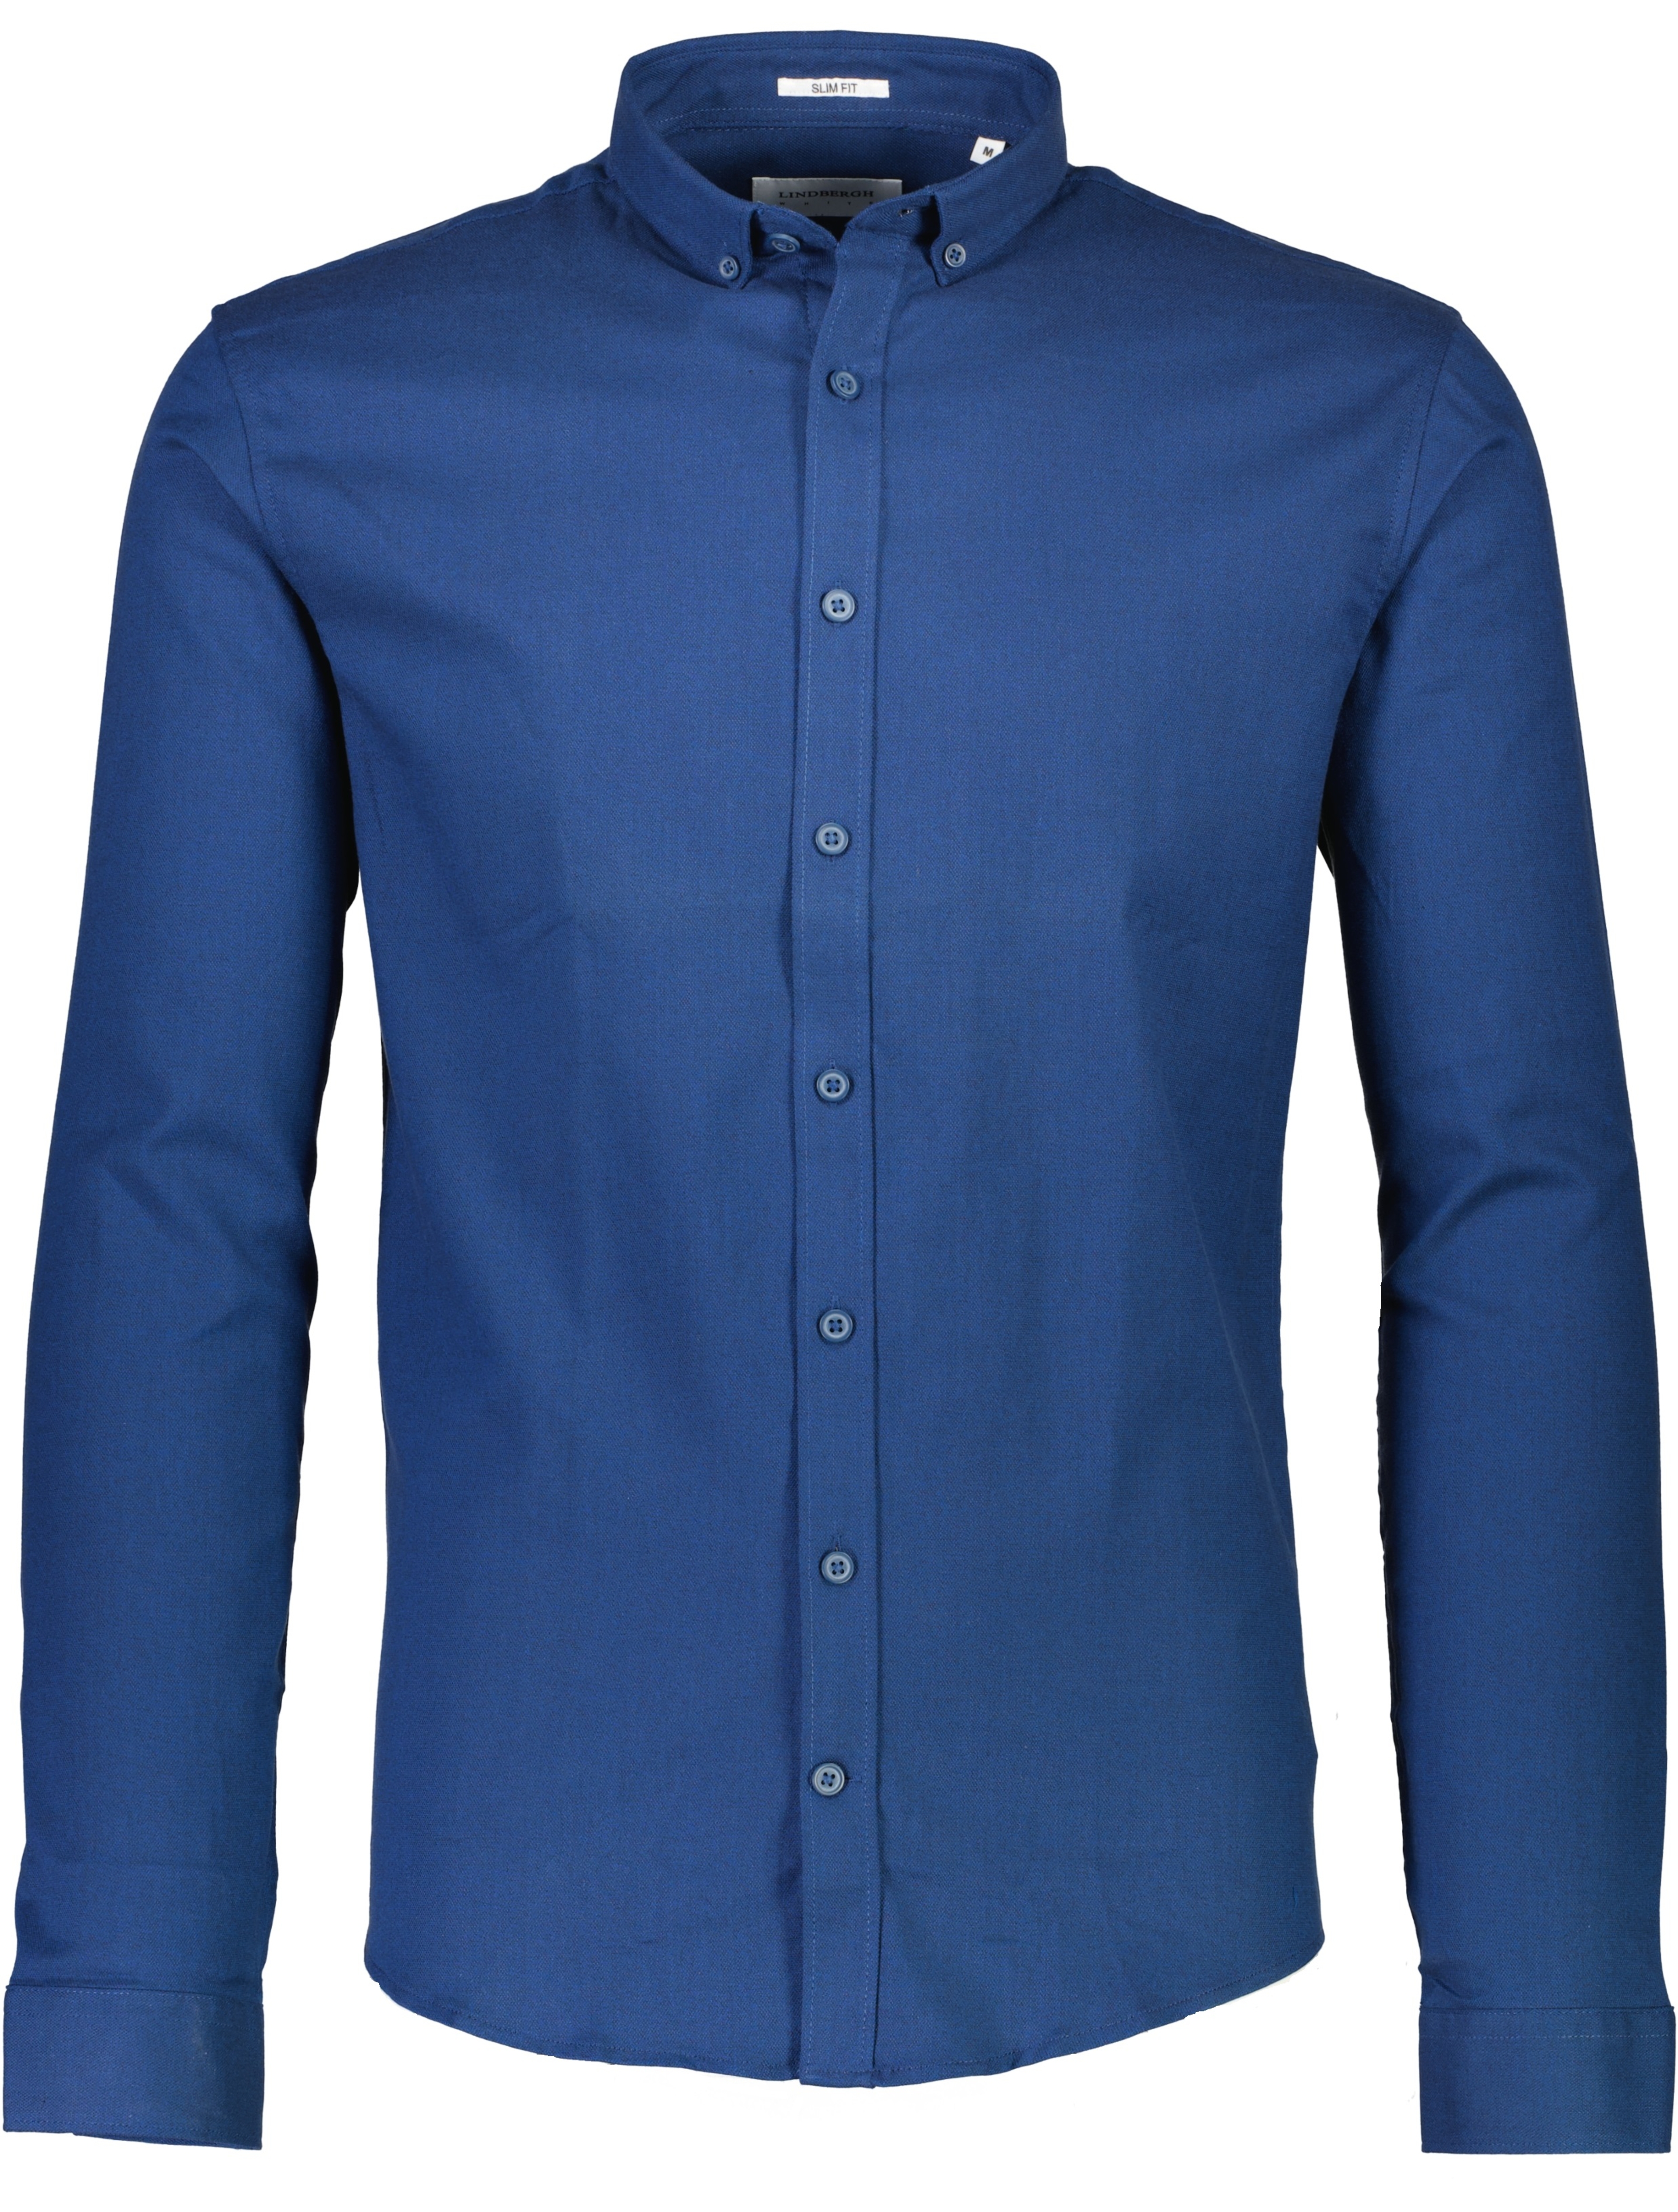 Lindbergh Business shirt blue / navy